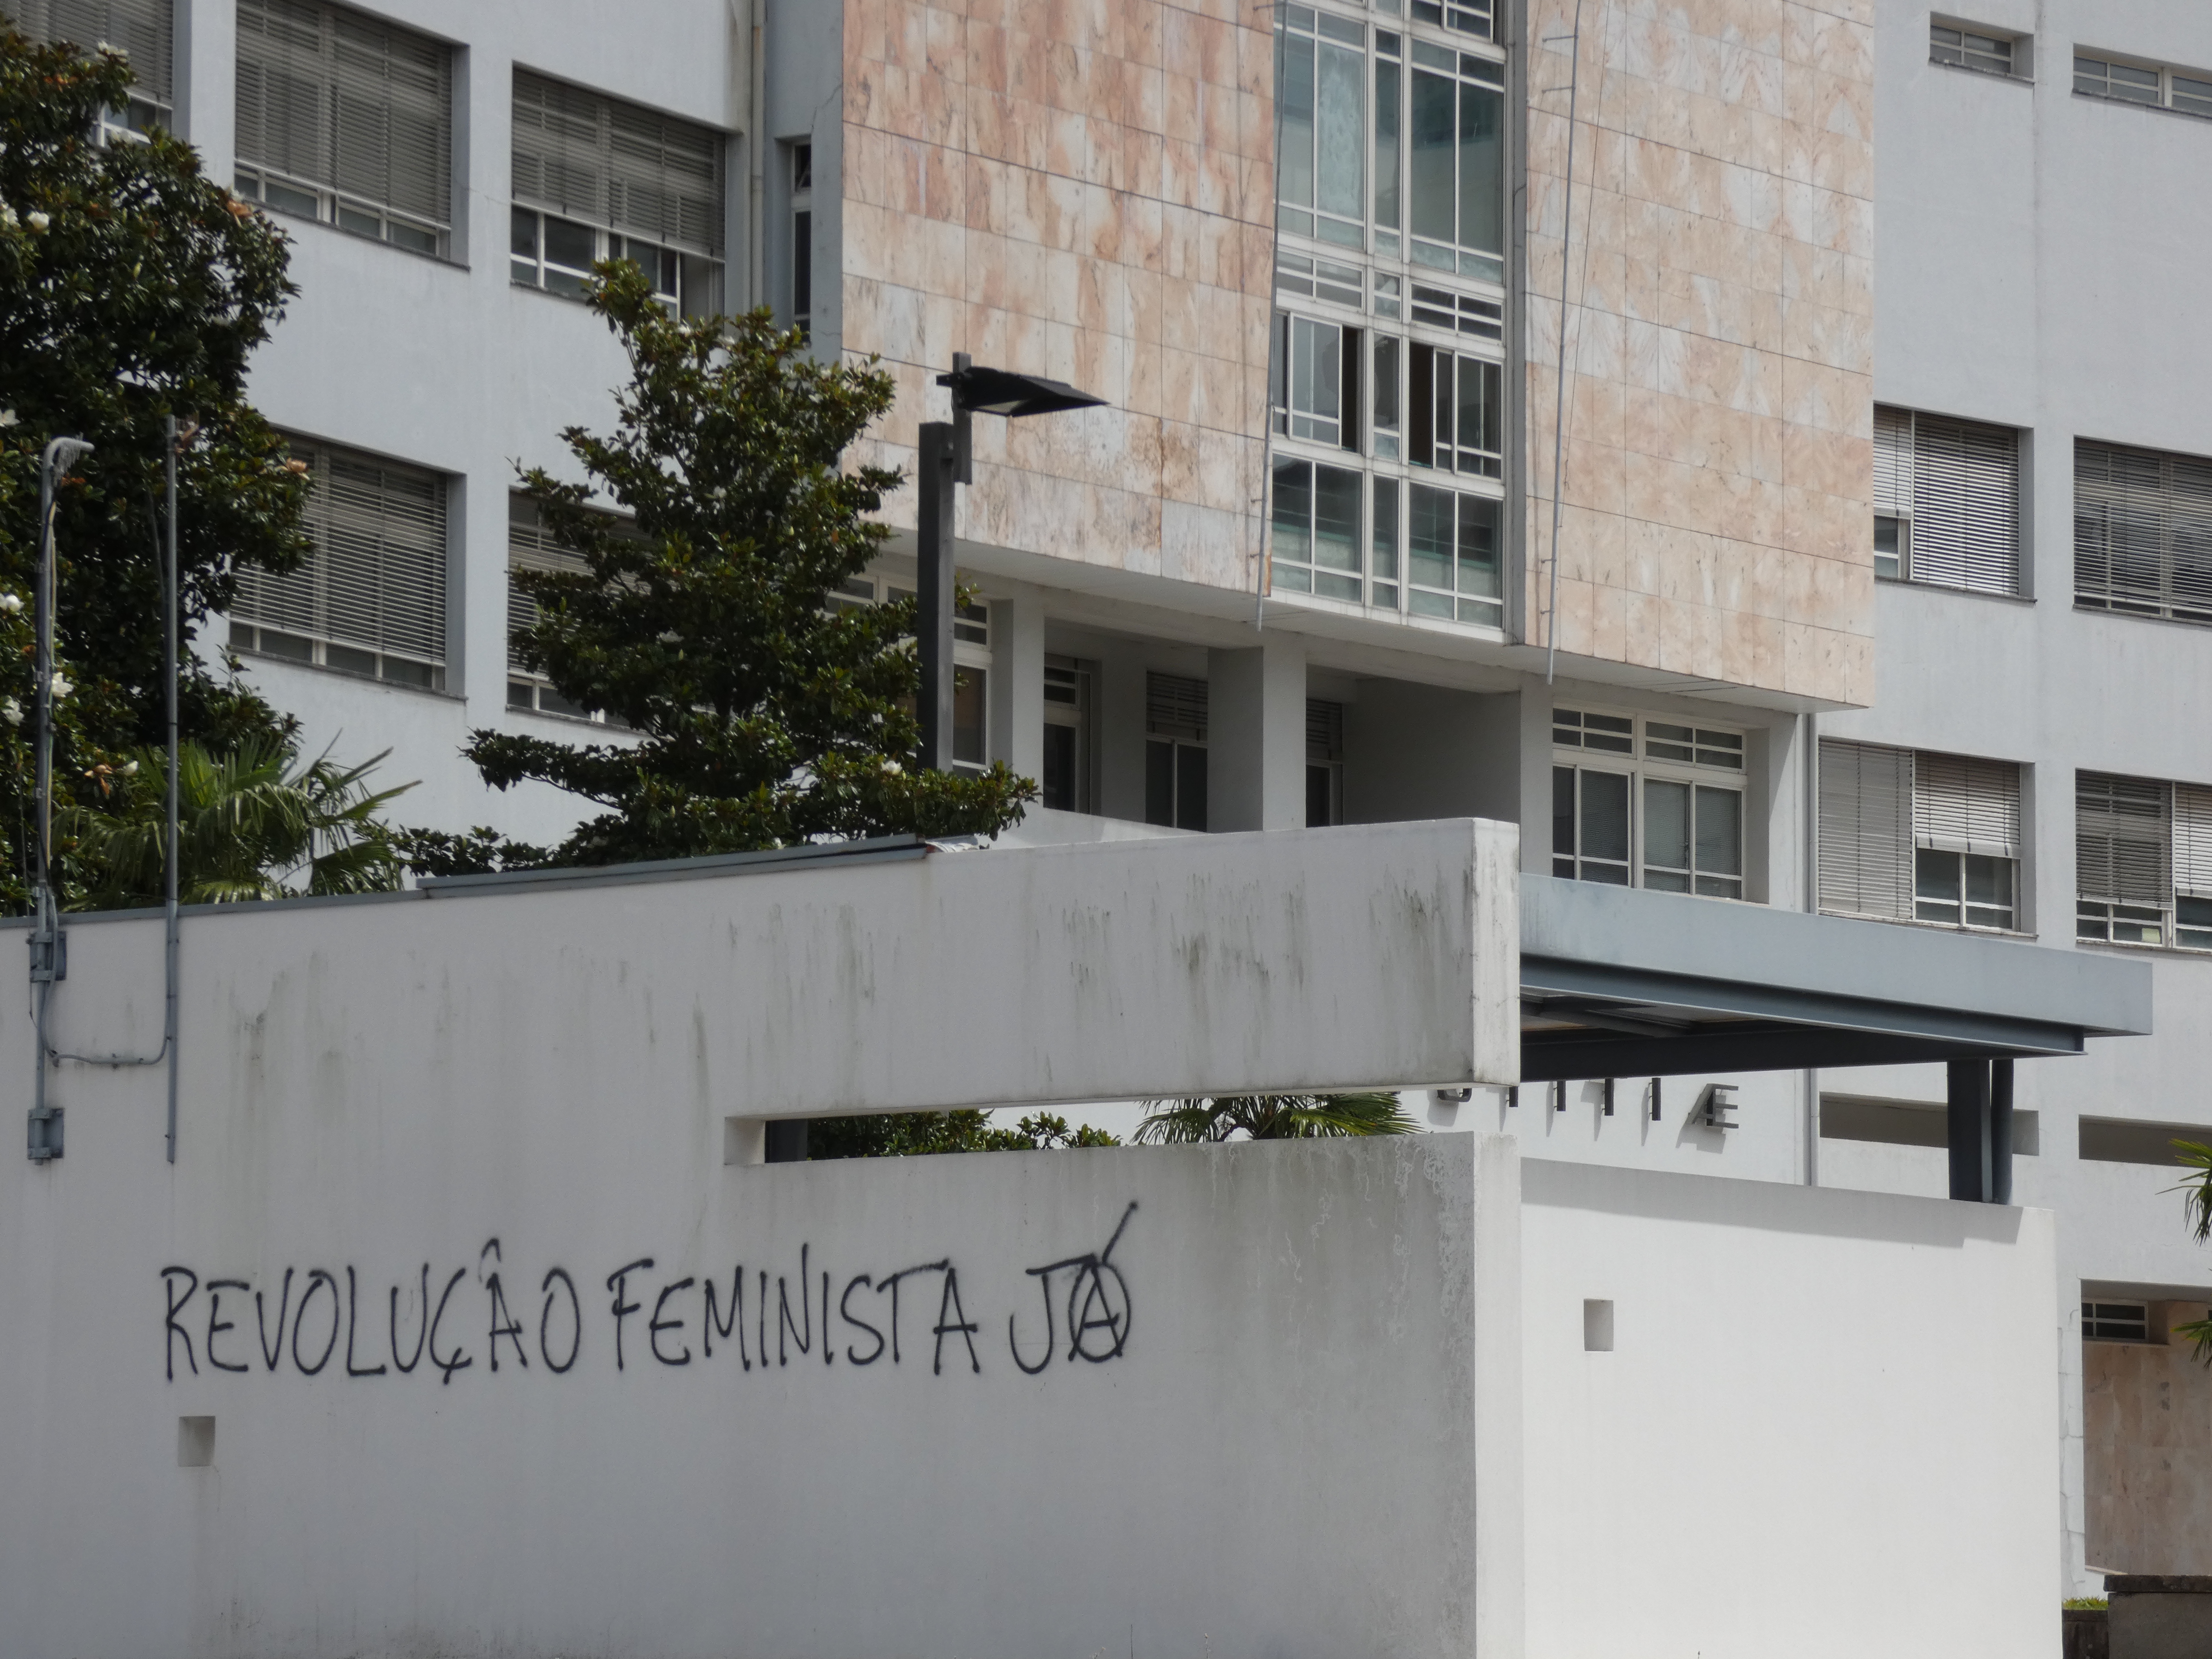 Frases como "Revolução feminista já" e "Fim da imunidade machista" pichadas no Tribunal de Braga